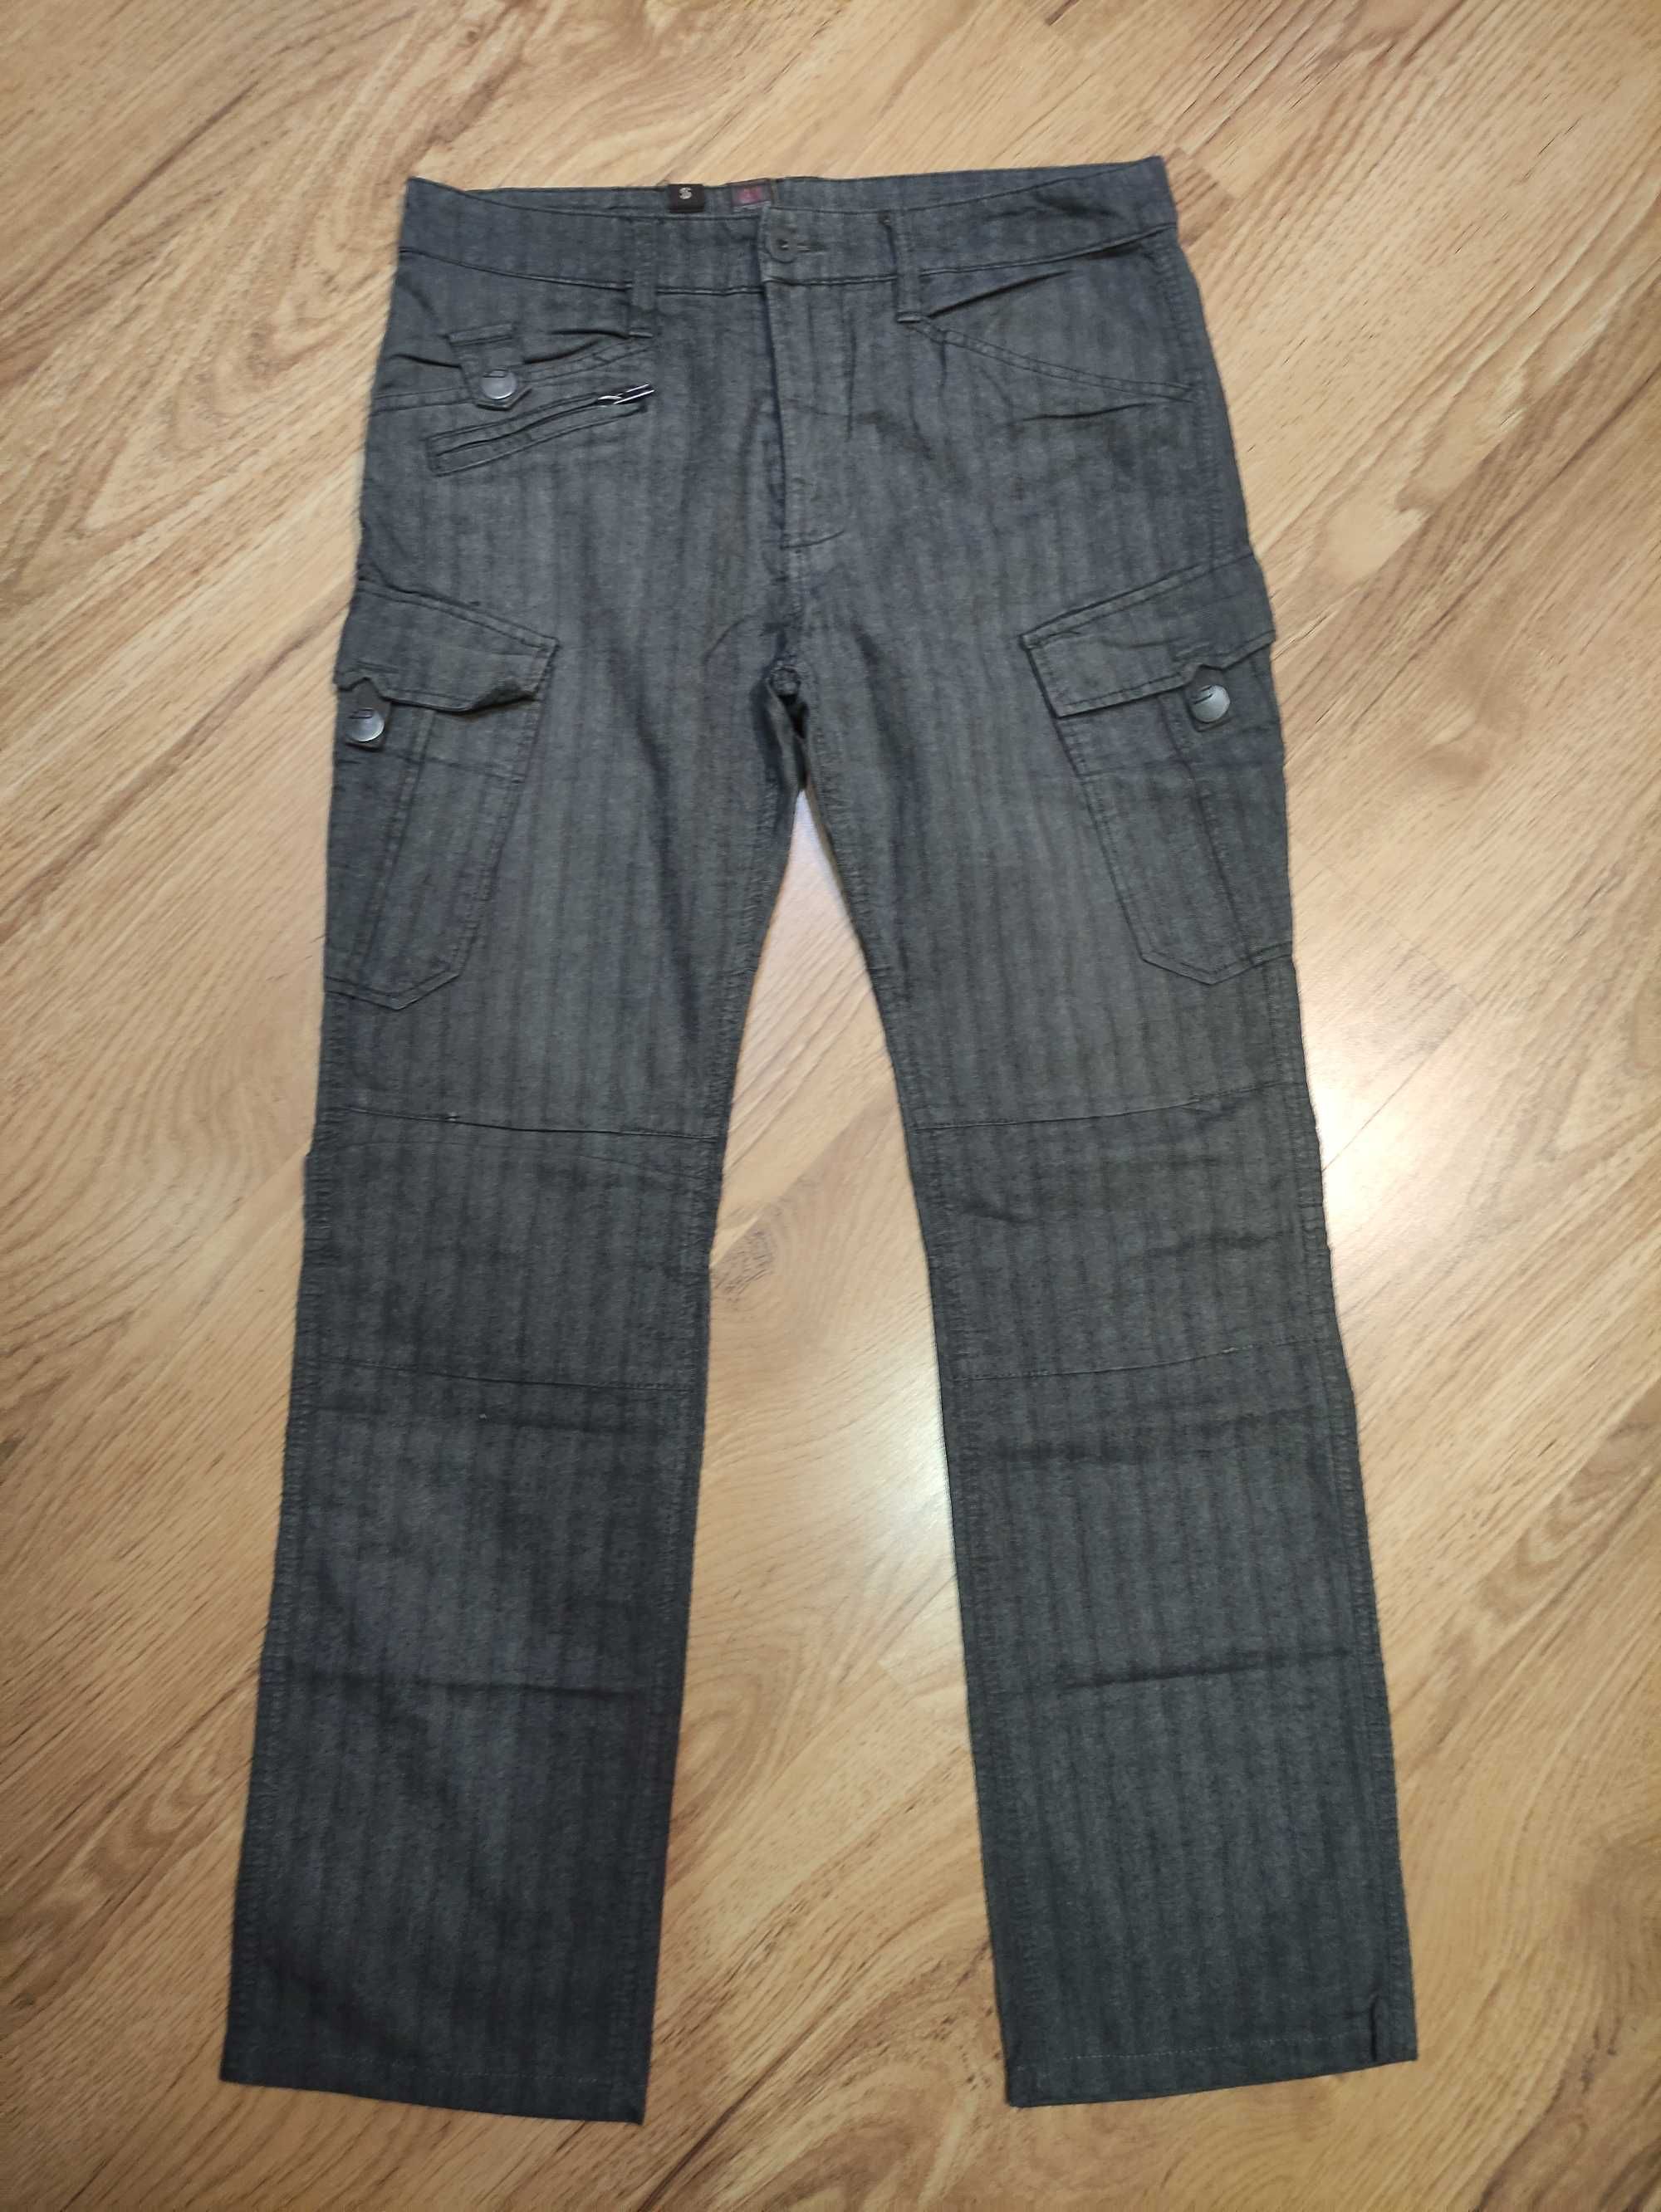 Spodnie dżinsowe, szare marki cropp r. M